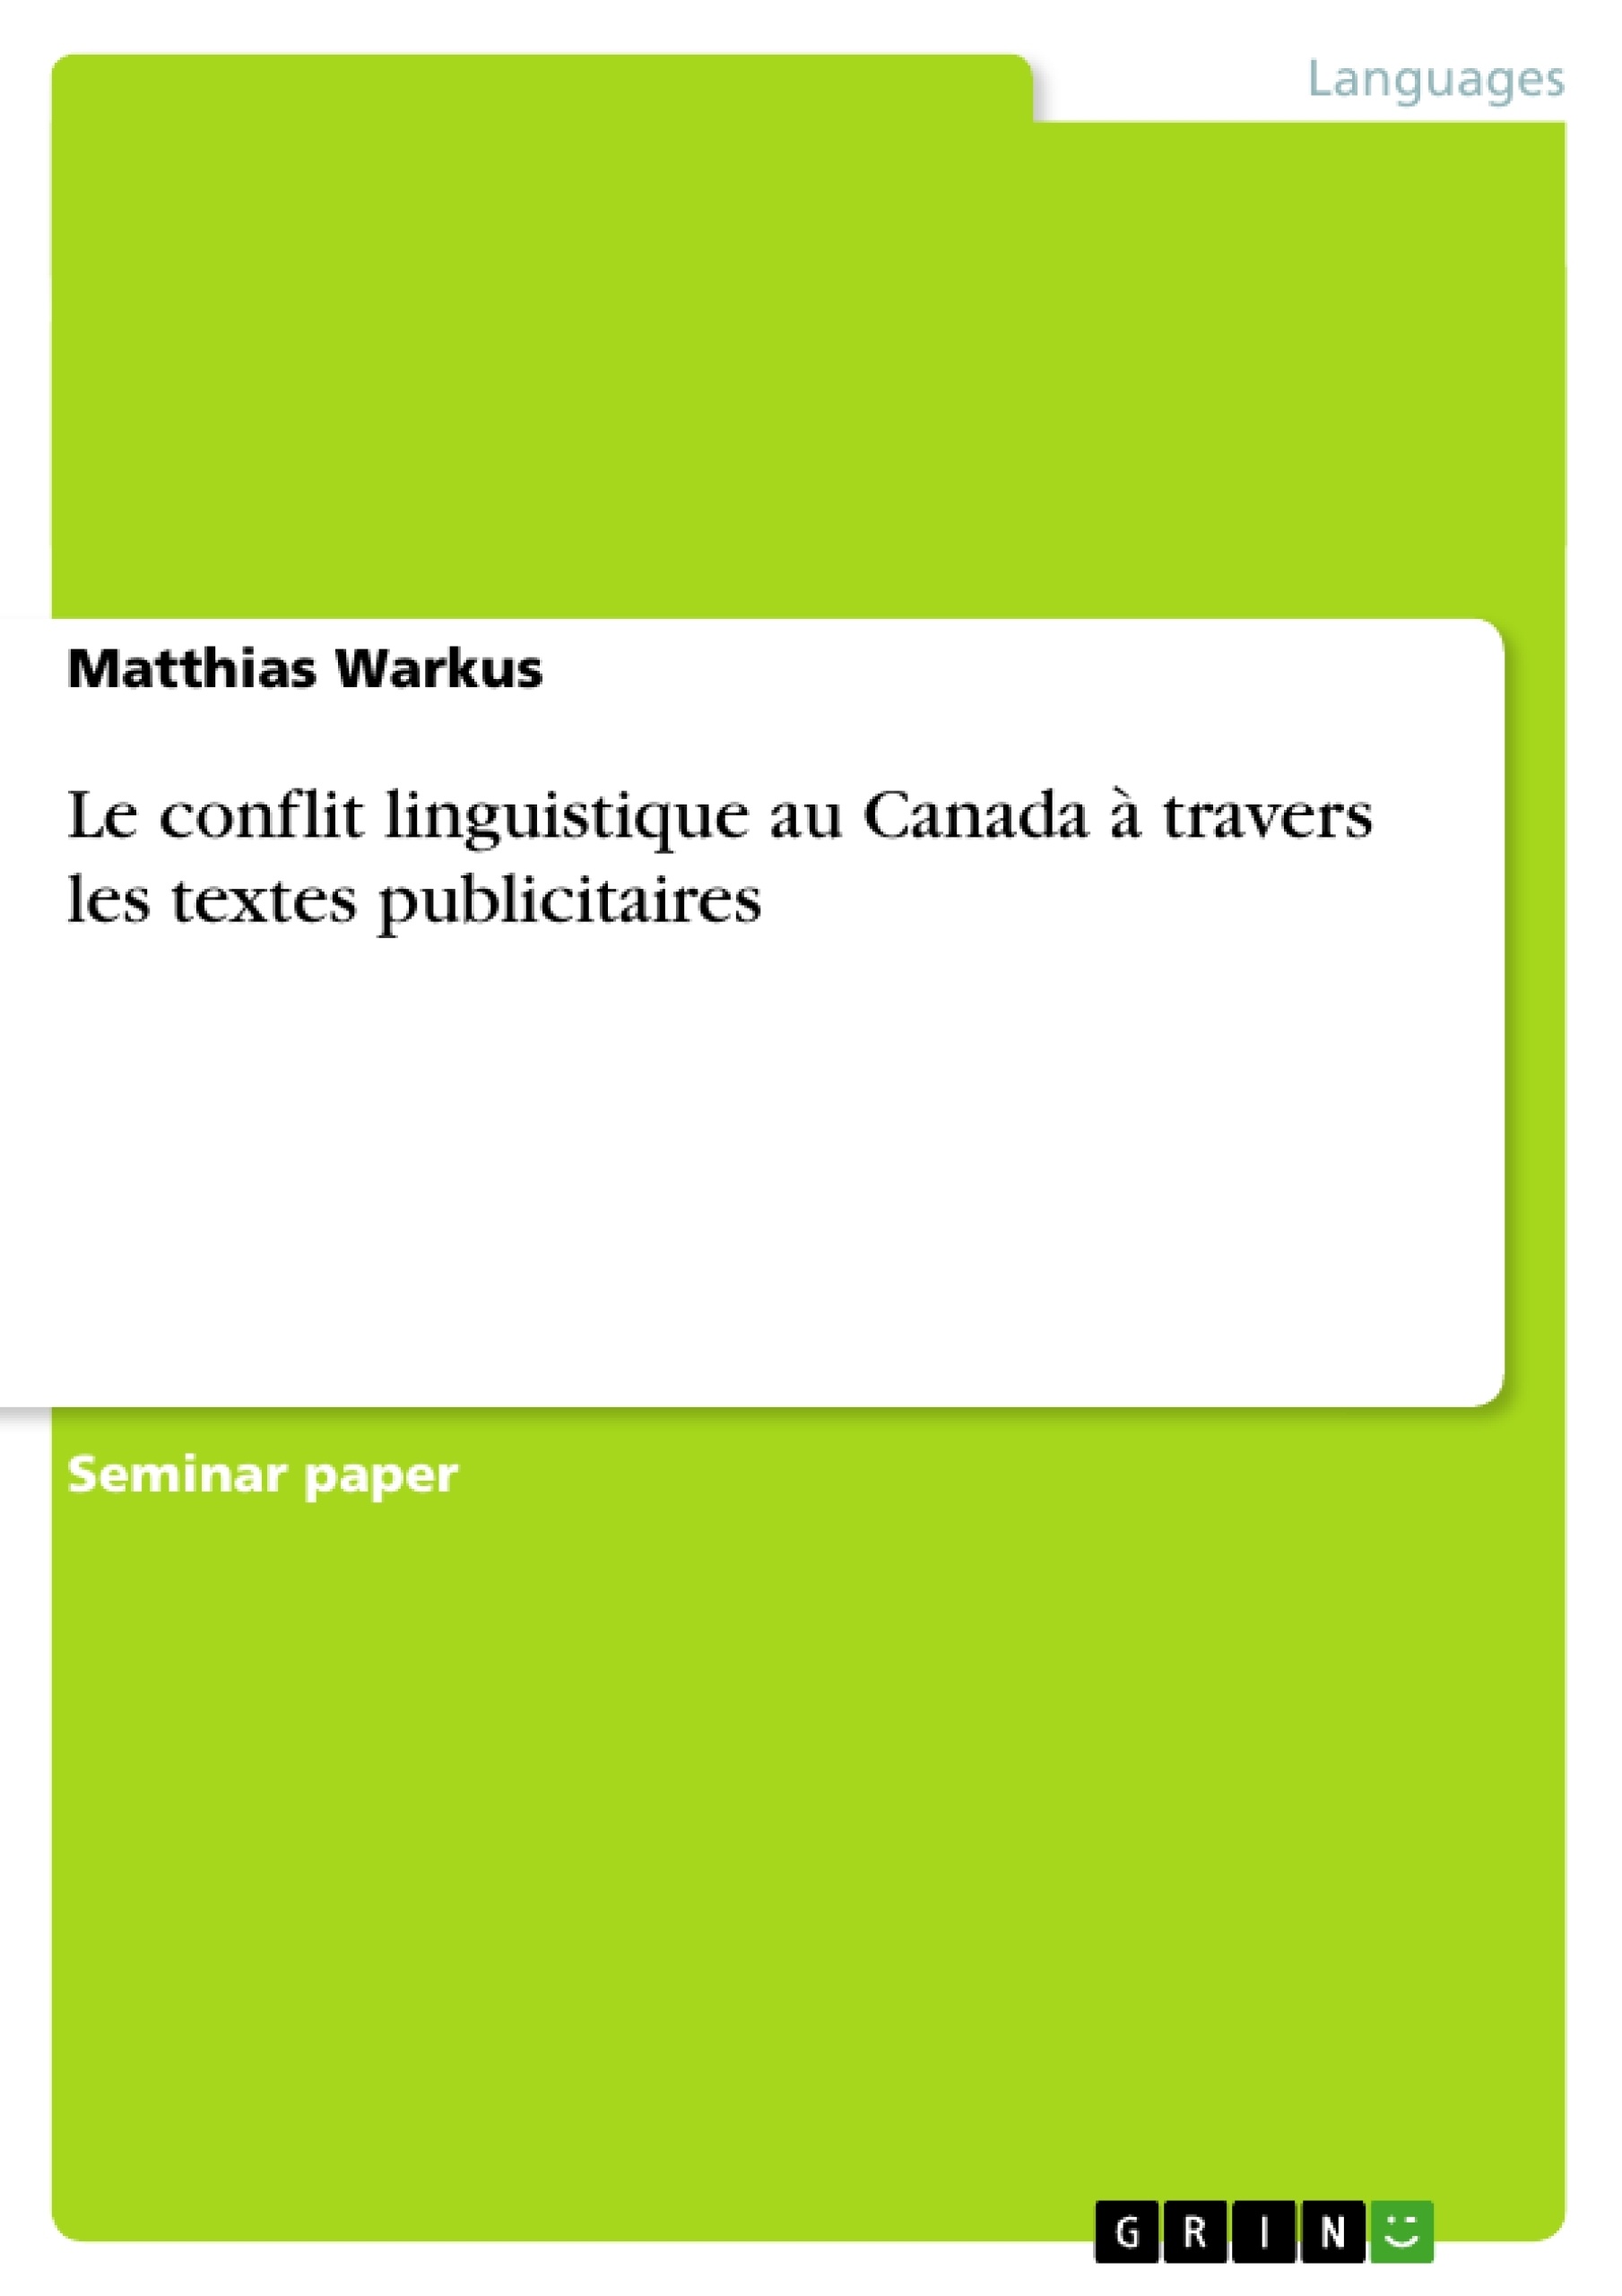 Title: Le conflit linguistique au Canada à travers les textes publicitaires